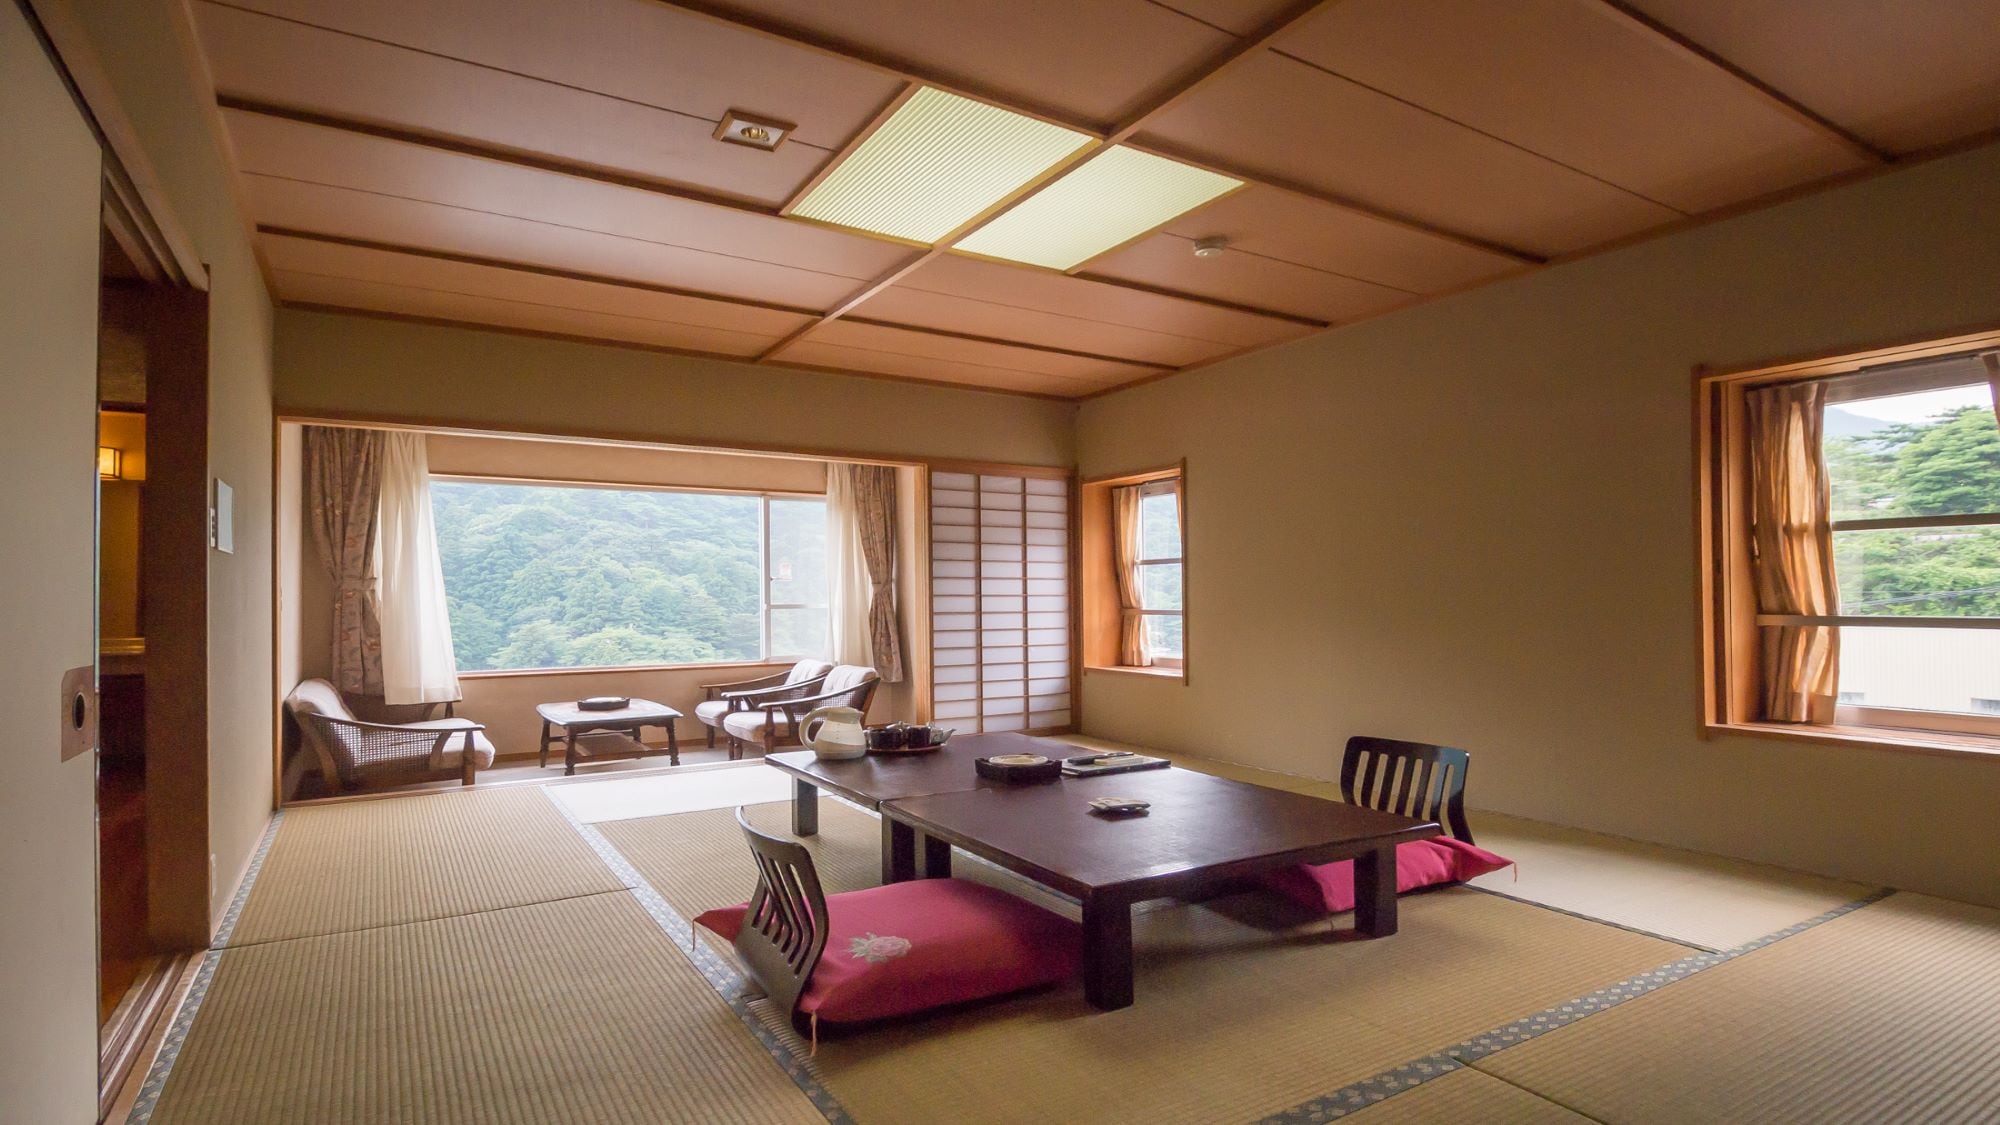 【객실(일본식 방) 일례】대자연에 둘러싸인 치유의 일본식 방 공간